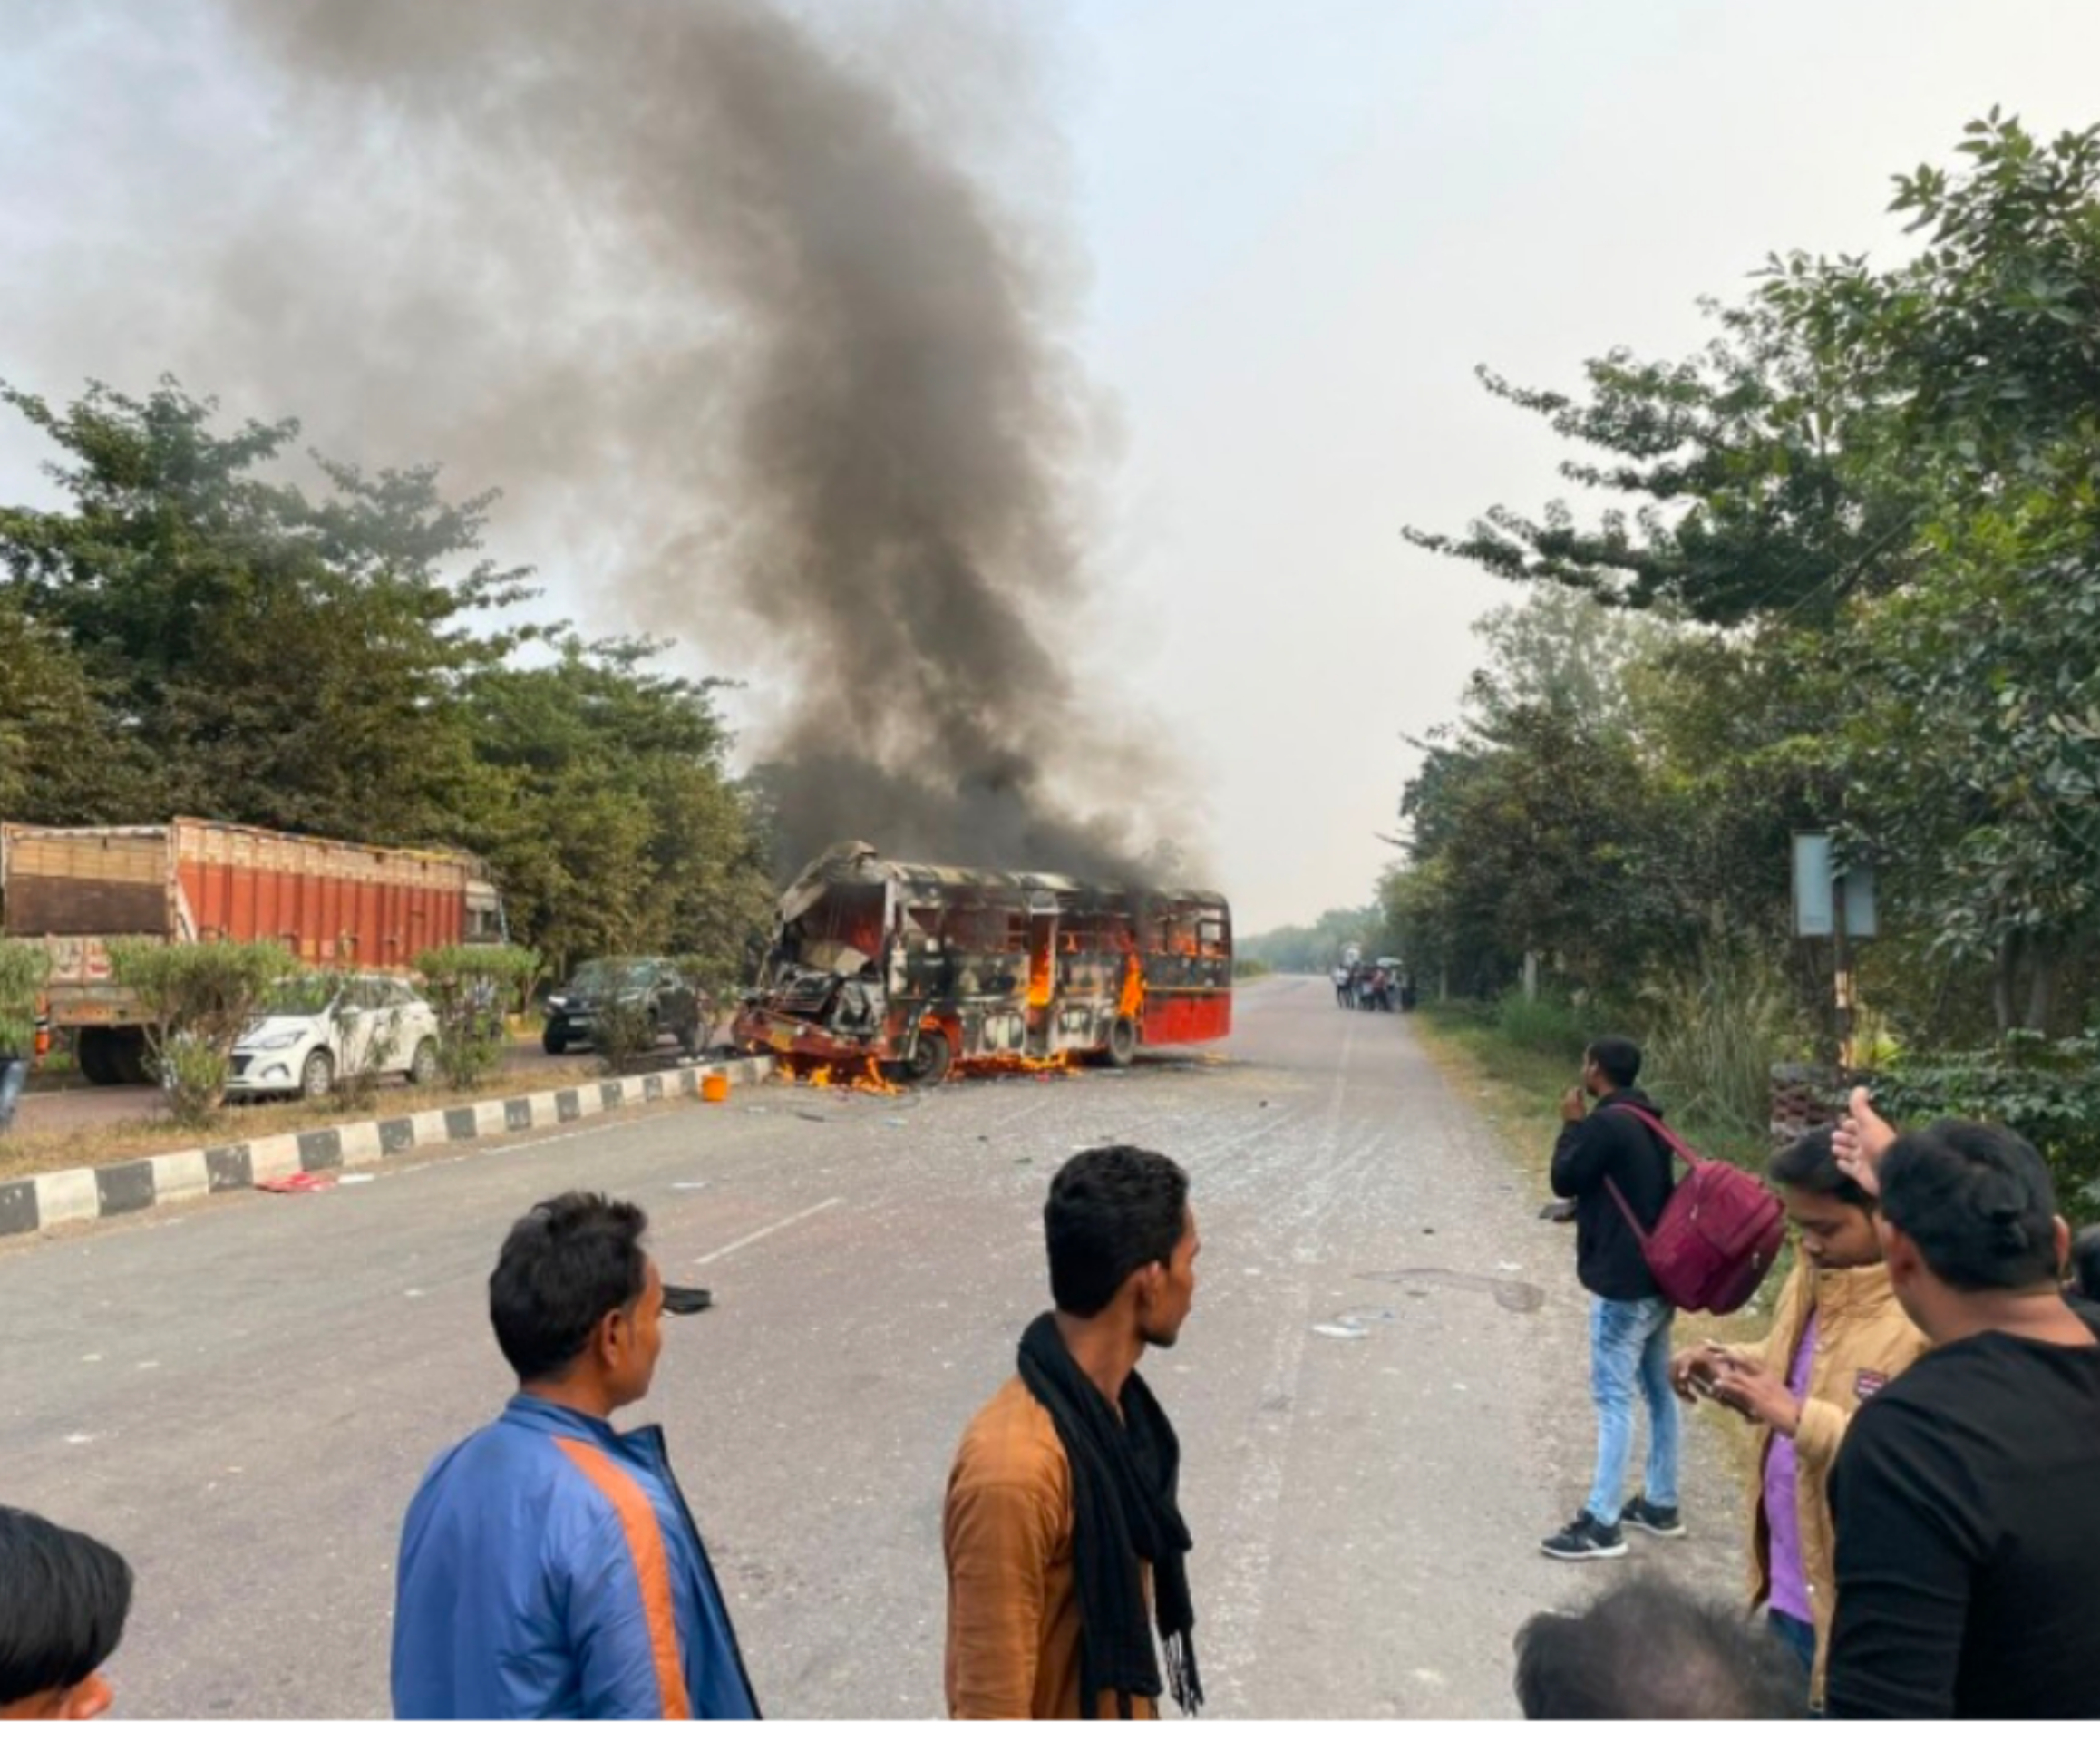 रायबरेली से लखनऊ जा रही है बस के टकराने से बस में लगी आग, यात्रियों में मची अफरा-तफरी कई घायल